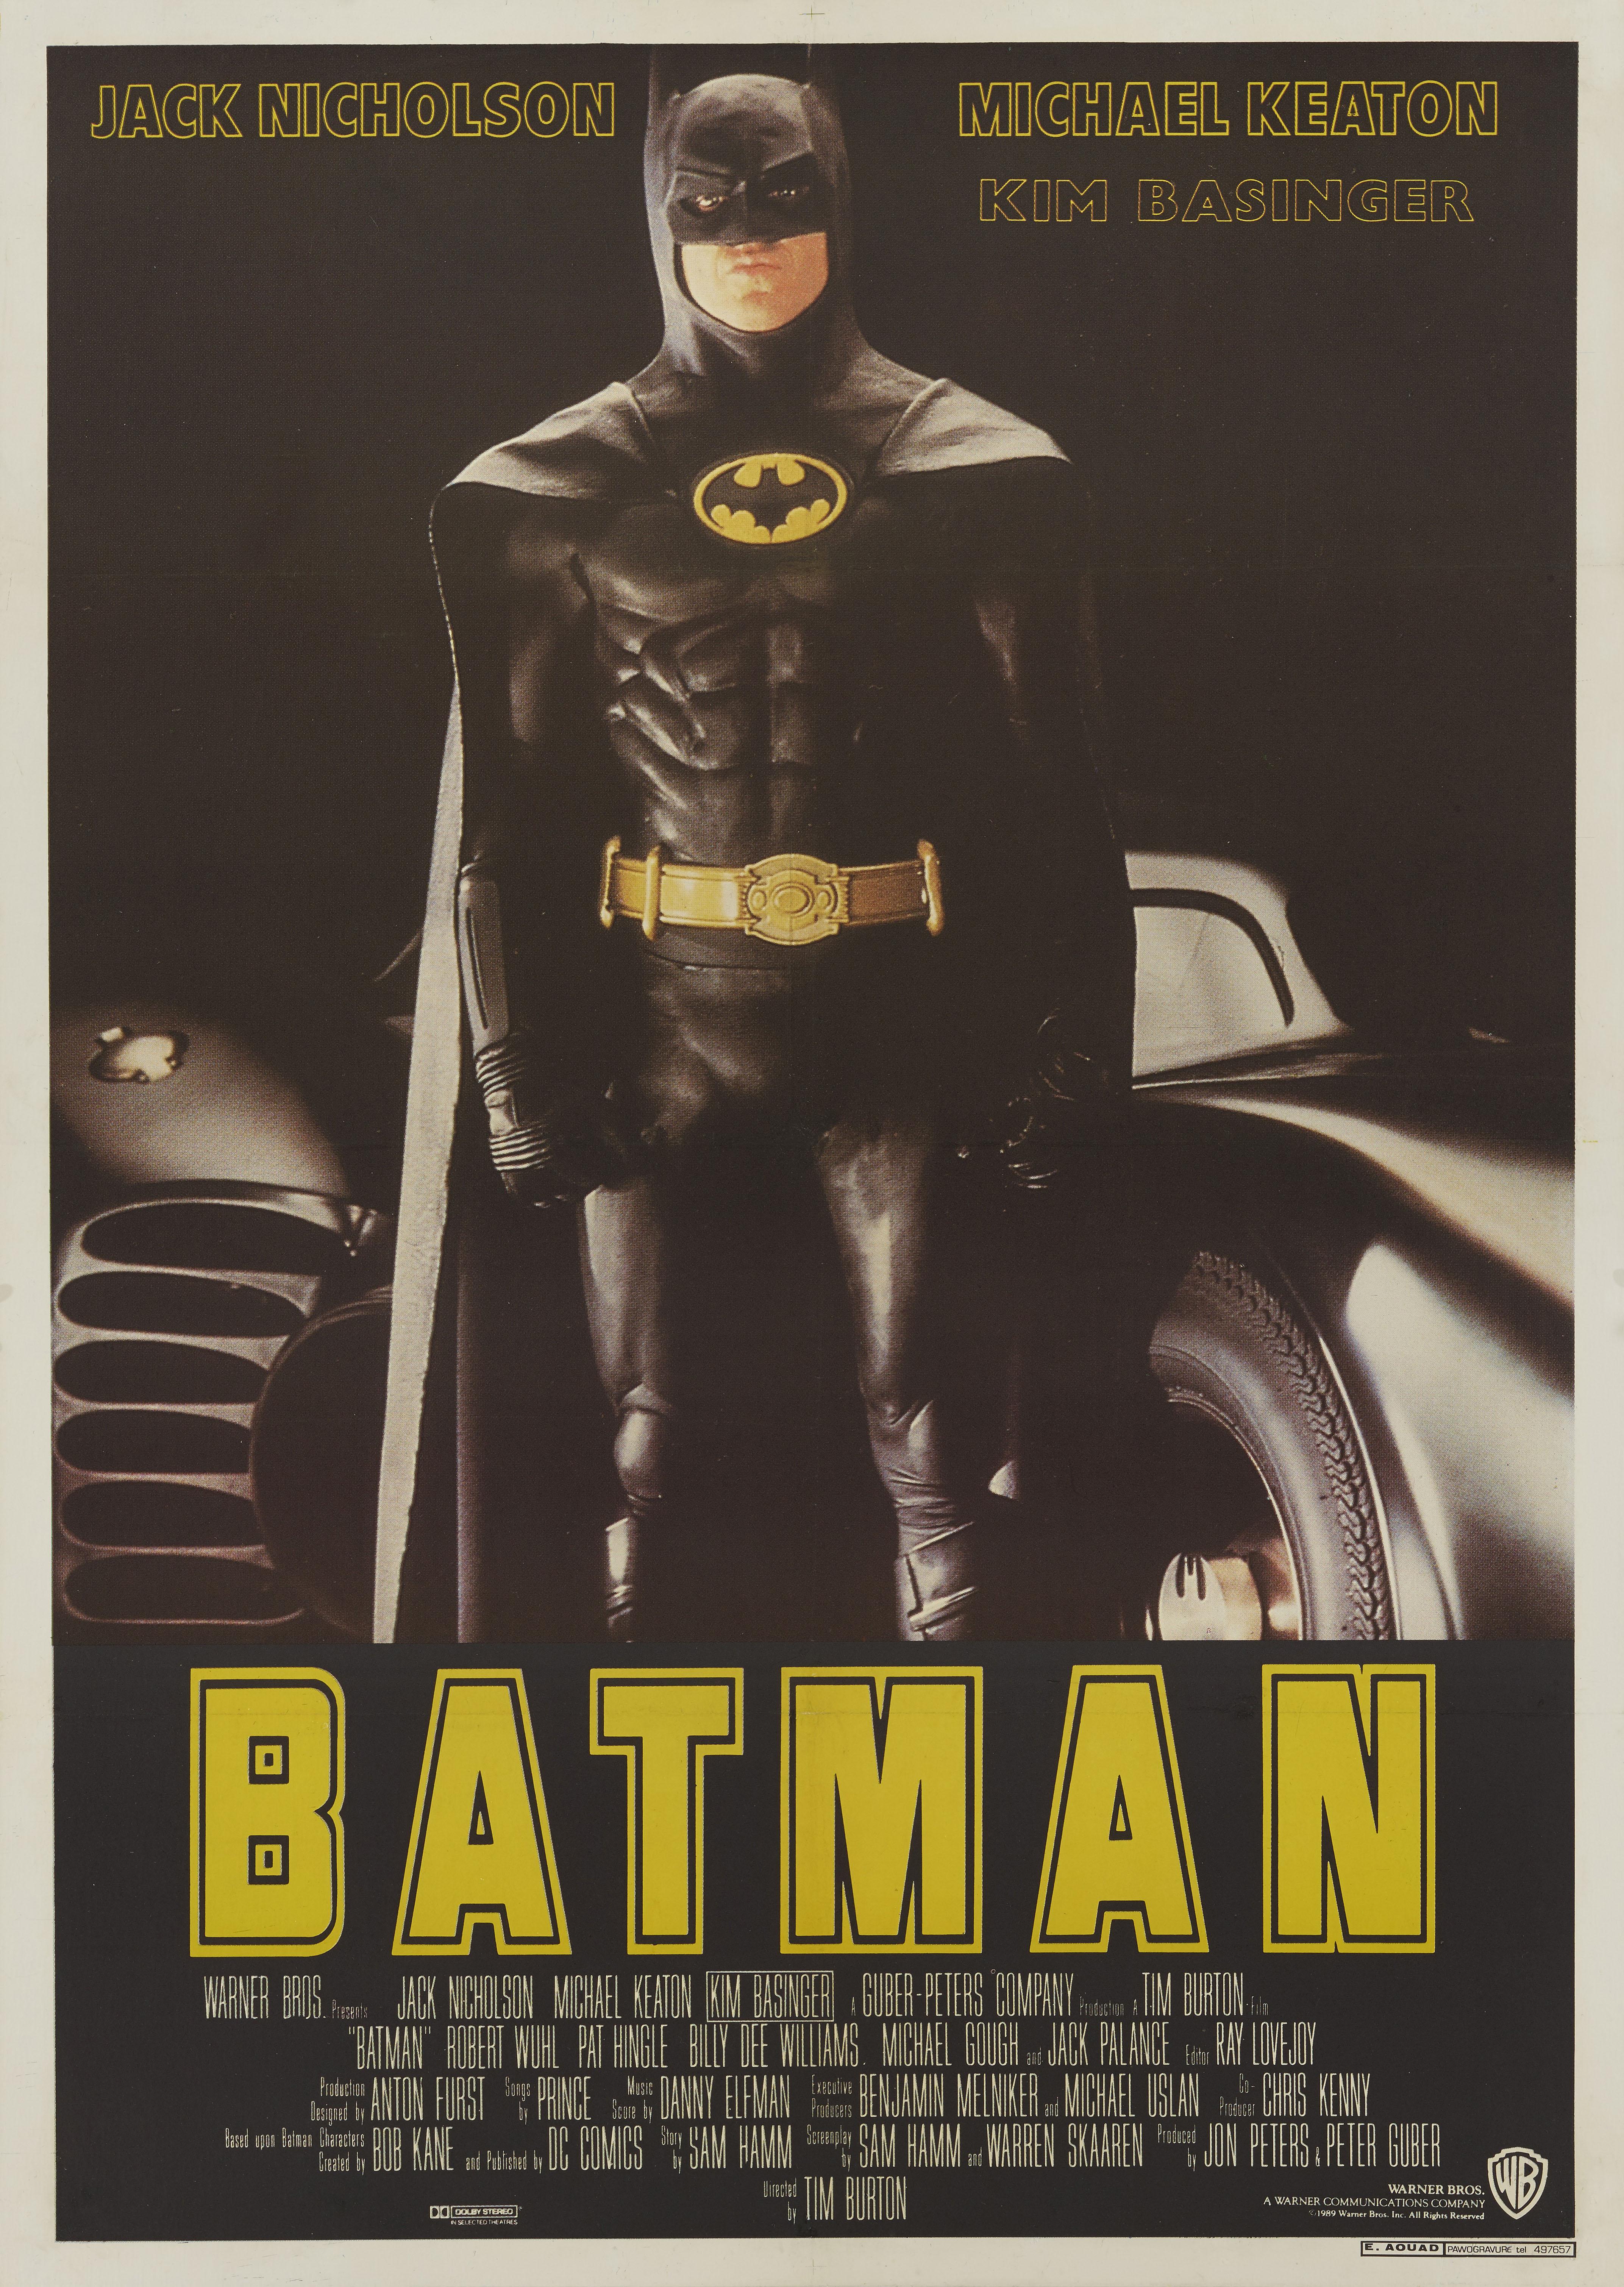 Affiche originale libanaise pour le film Batman (1989) de Tim Burton avec Jack Nicholson, Michael Keaton et Kim Basinger. L'illustration de cette affiche est très différente de celle de l'affiche américaine qui ne comporte que le logo de la